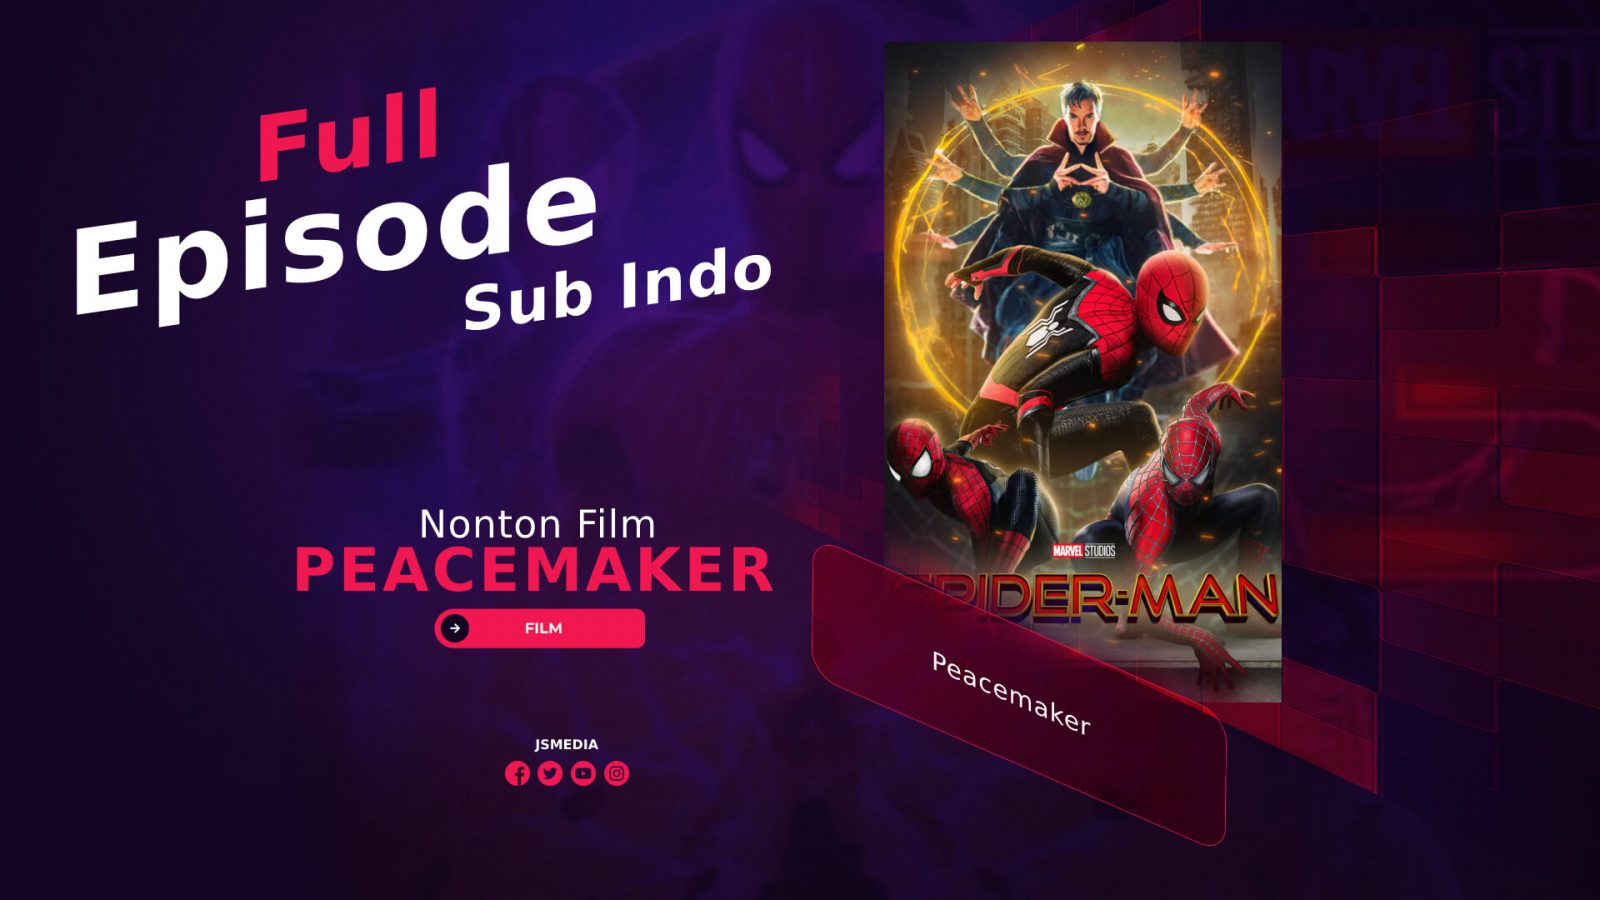 Download spider man no way home sub indo